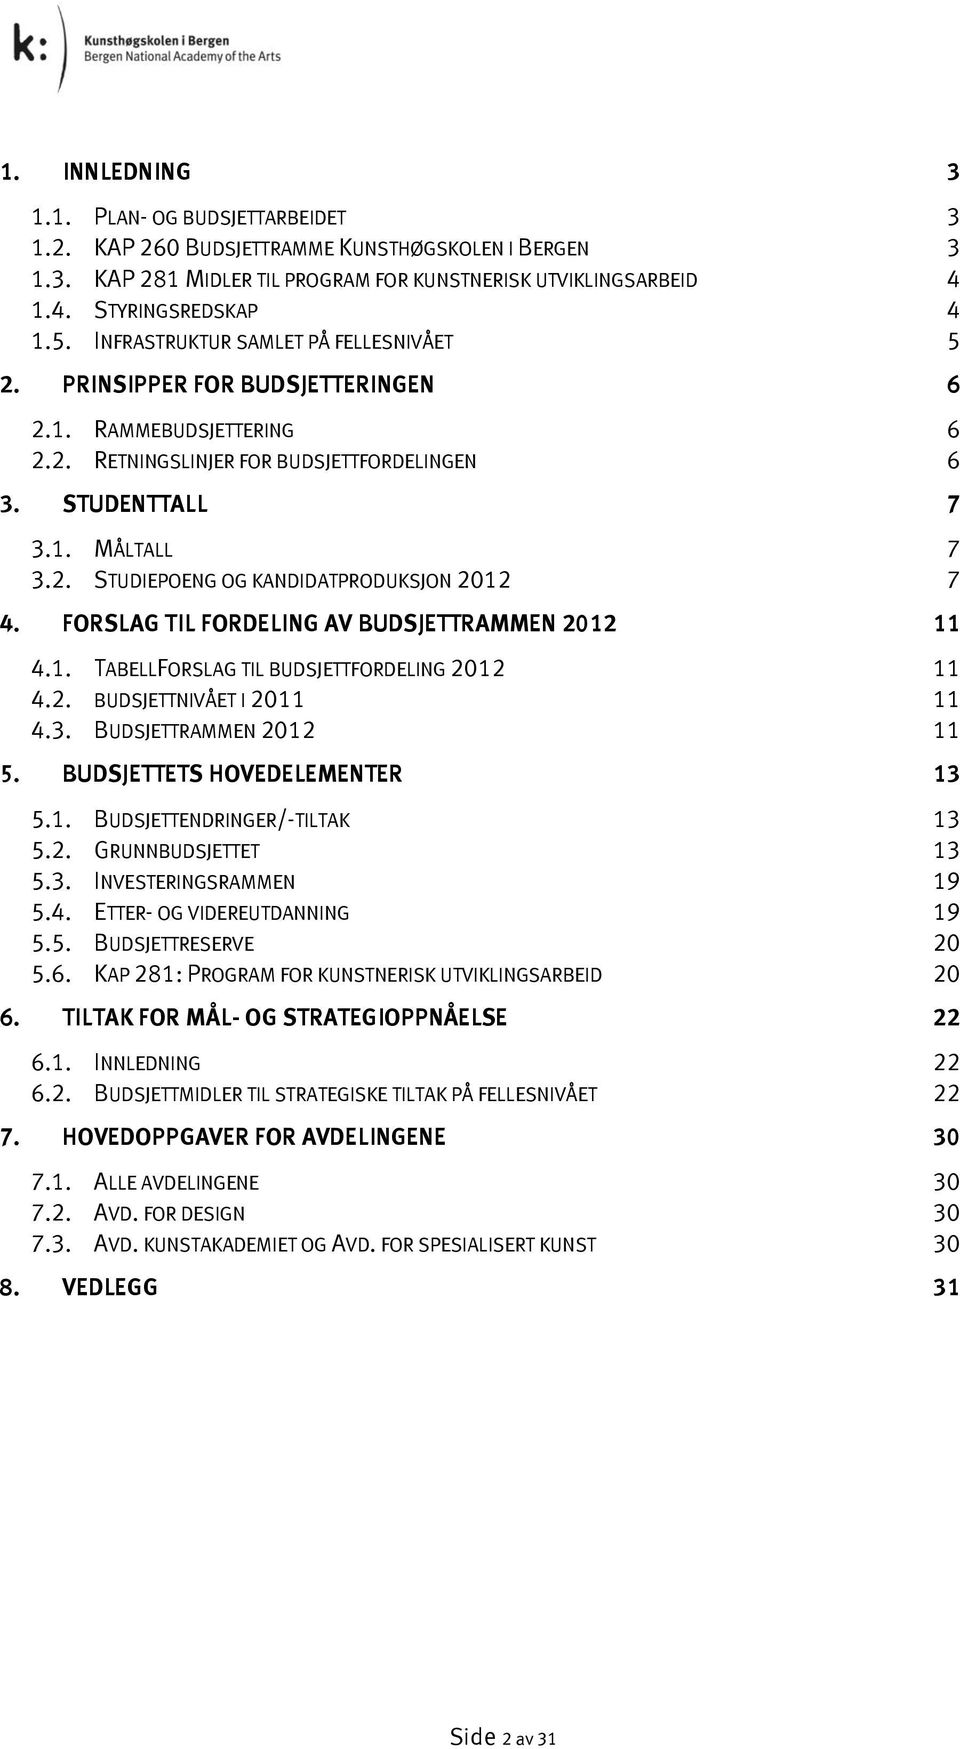 FORSLAG TIL FORDELING AV BUDSJETTRAMMEN 2012 11 4.1. TABELLFORSLAG TIL BUDSJETTFORDELING 2012 11 4.2. BUDSJETTNIVÅET I 2011 11 4.3. BUDSJETTRAMMEN 2012 11 5. BUDSJETTETS HOVEDELEMENTER 13 5.1. BUDSJETTENDRINGER/-TILTAK 13 5.